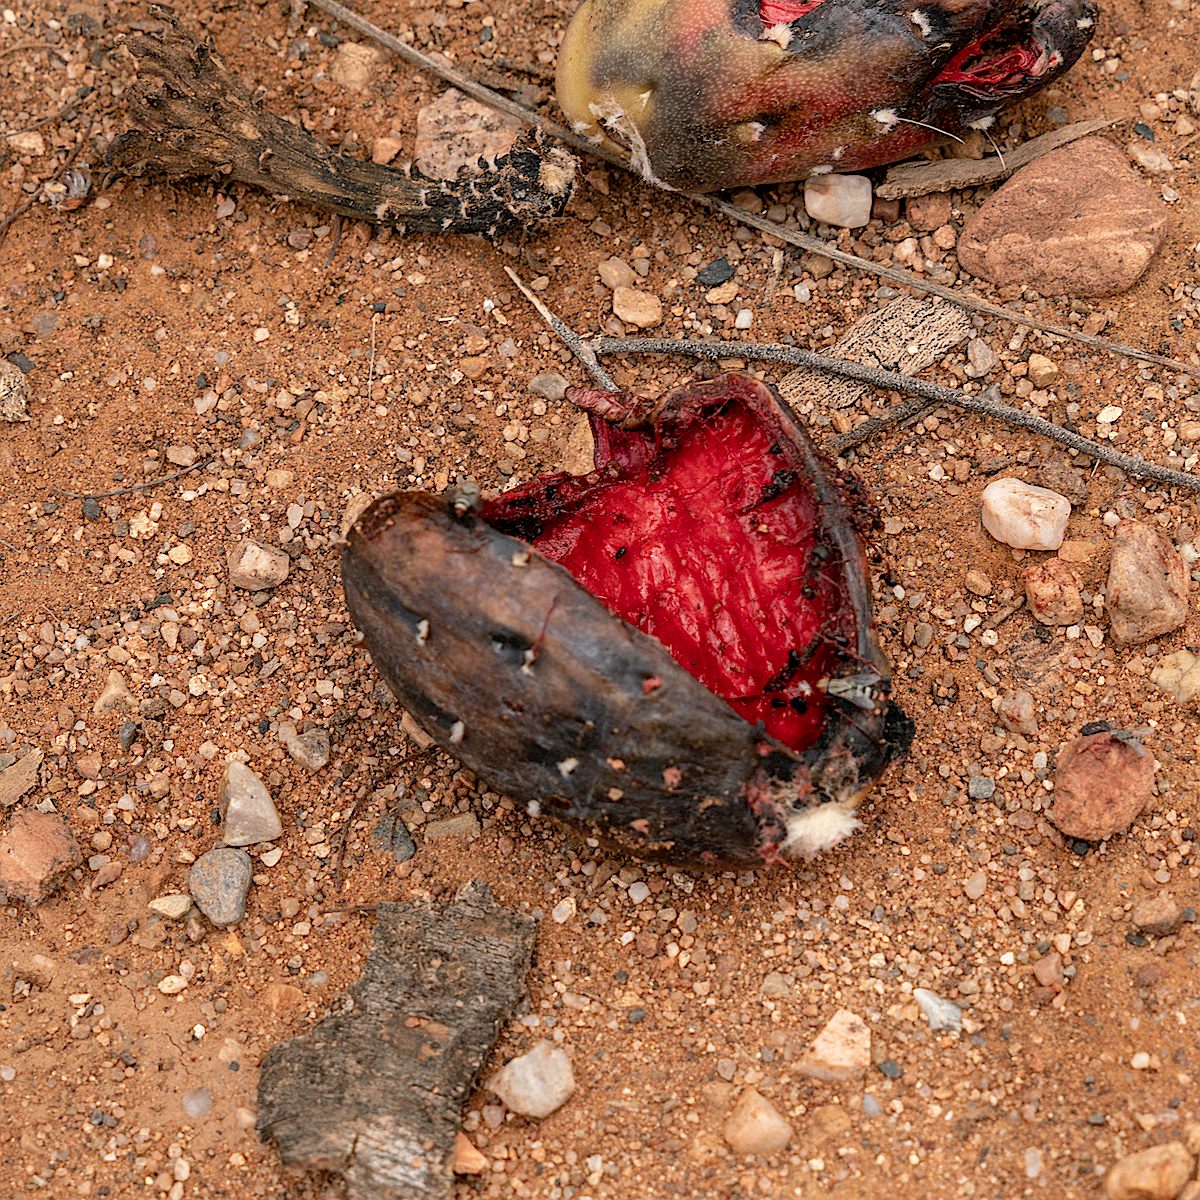 Fallen Saguaro fruit along the Sunzia Route. July 2018.